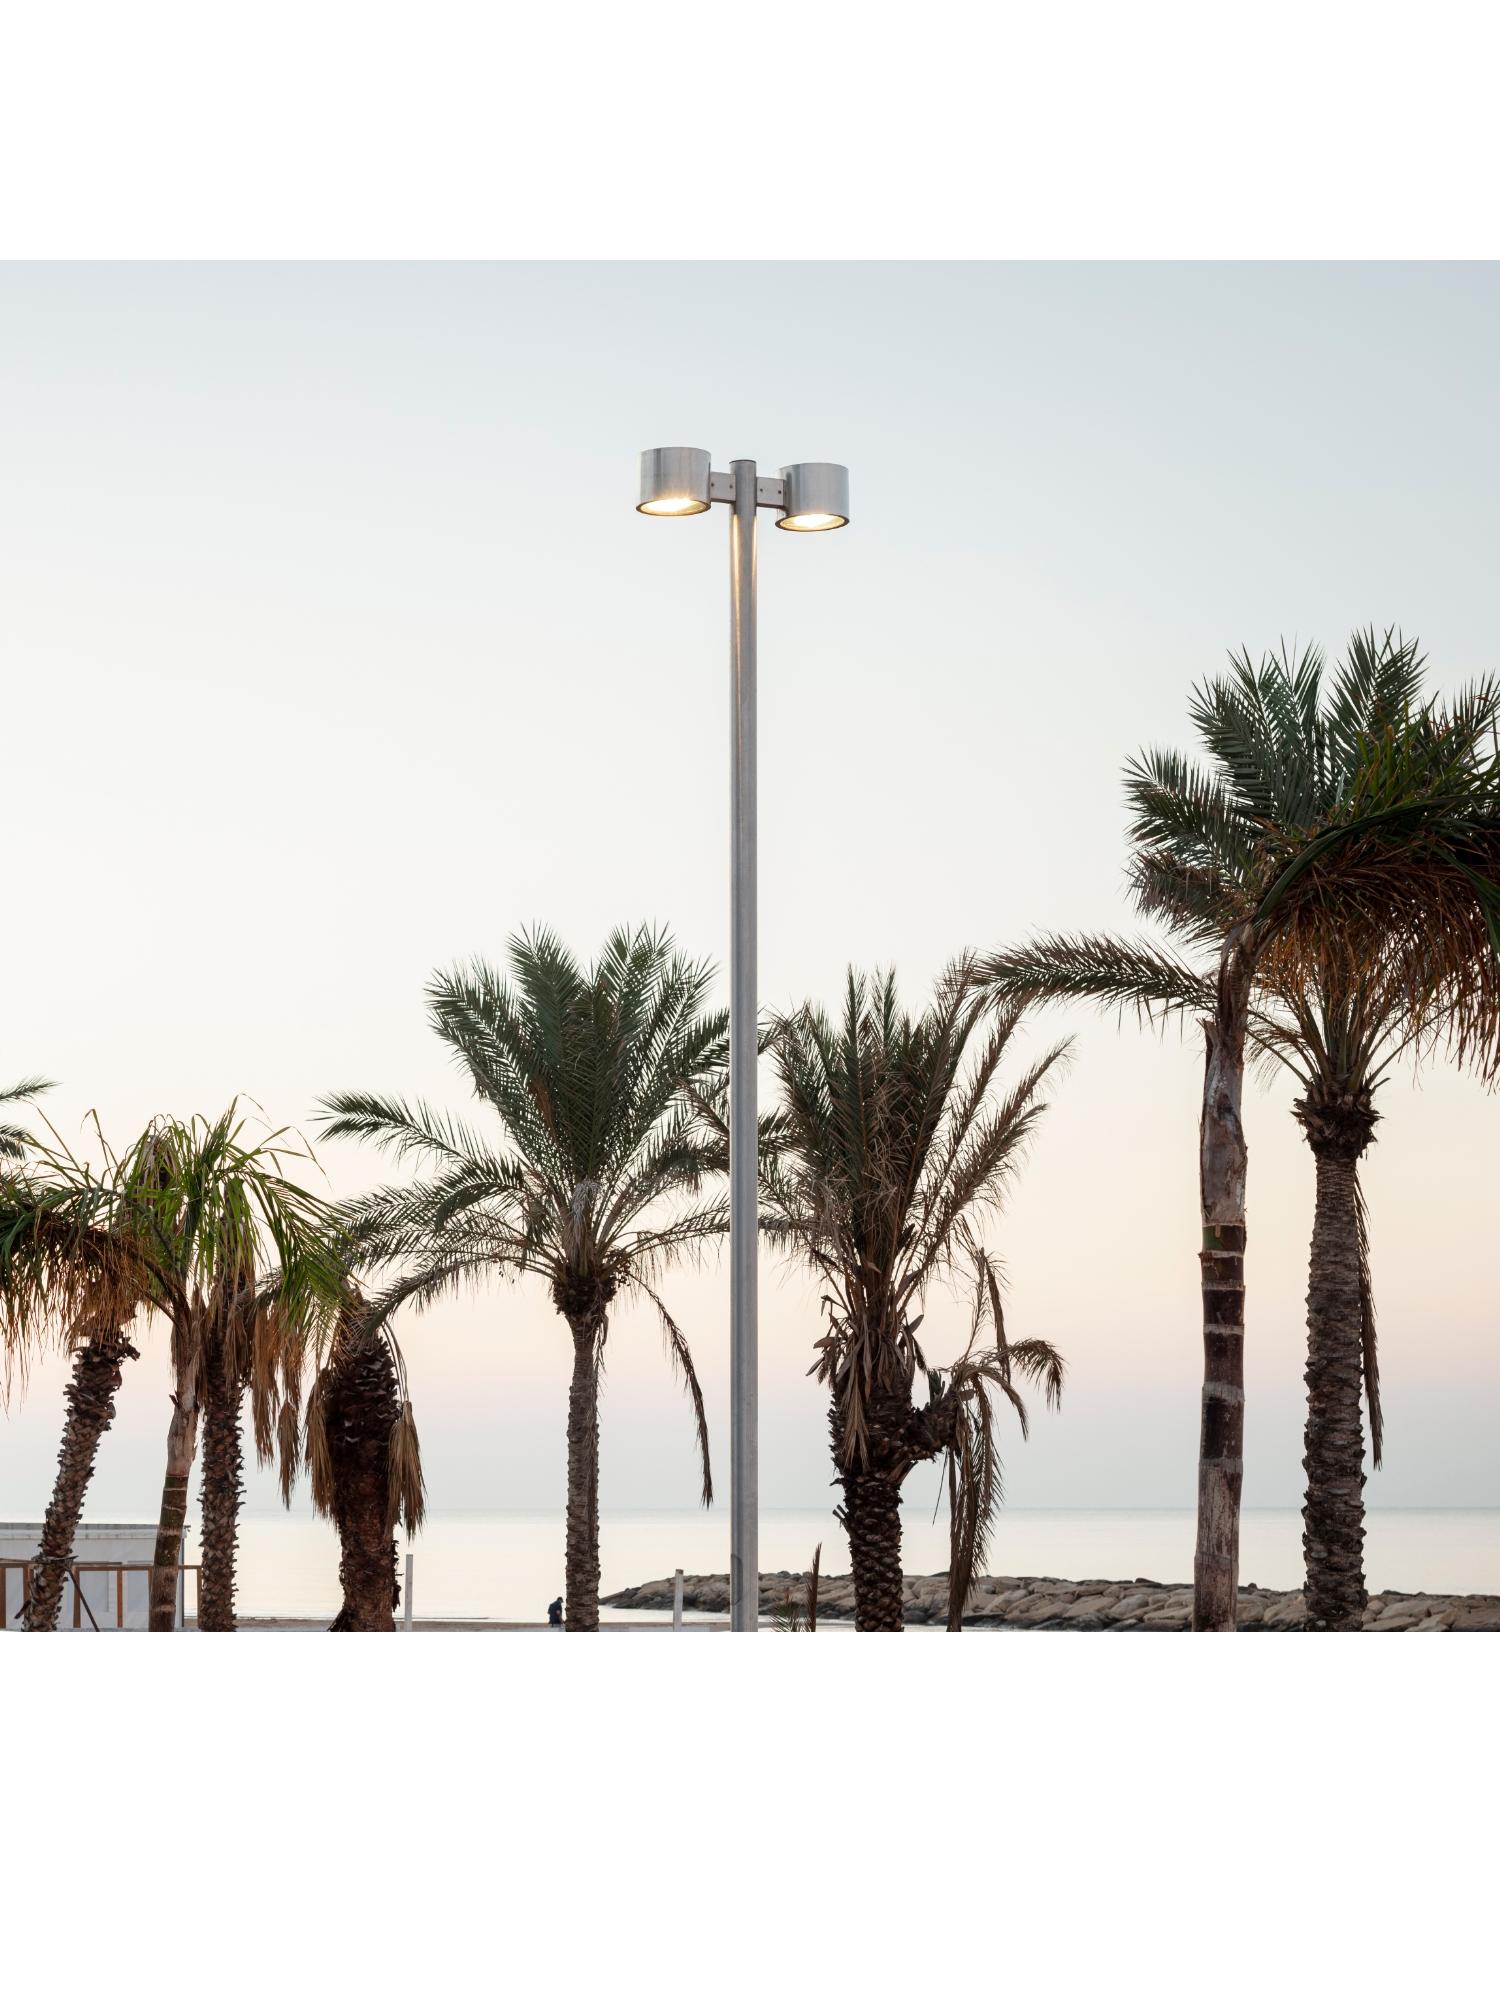 Des poteaux pour un &eacute;clairage public efficace :
la promenade de Marina di Ragusa